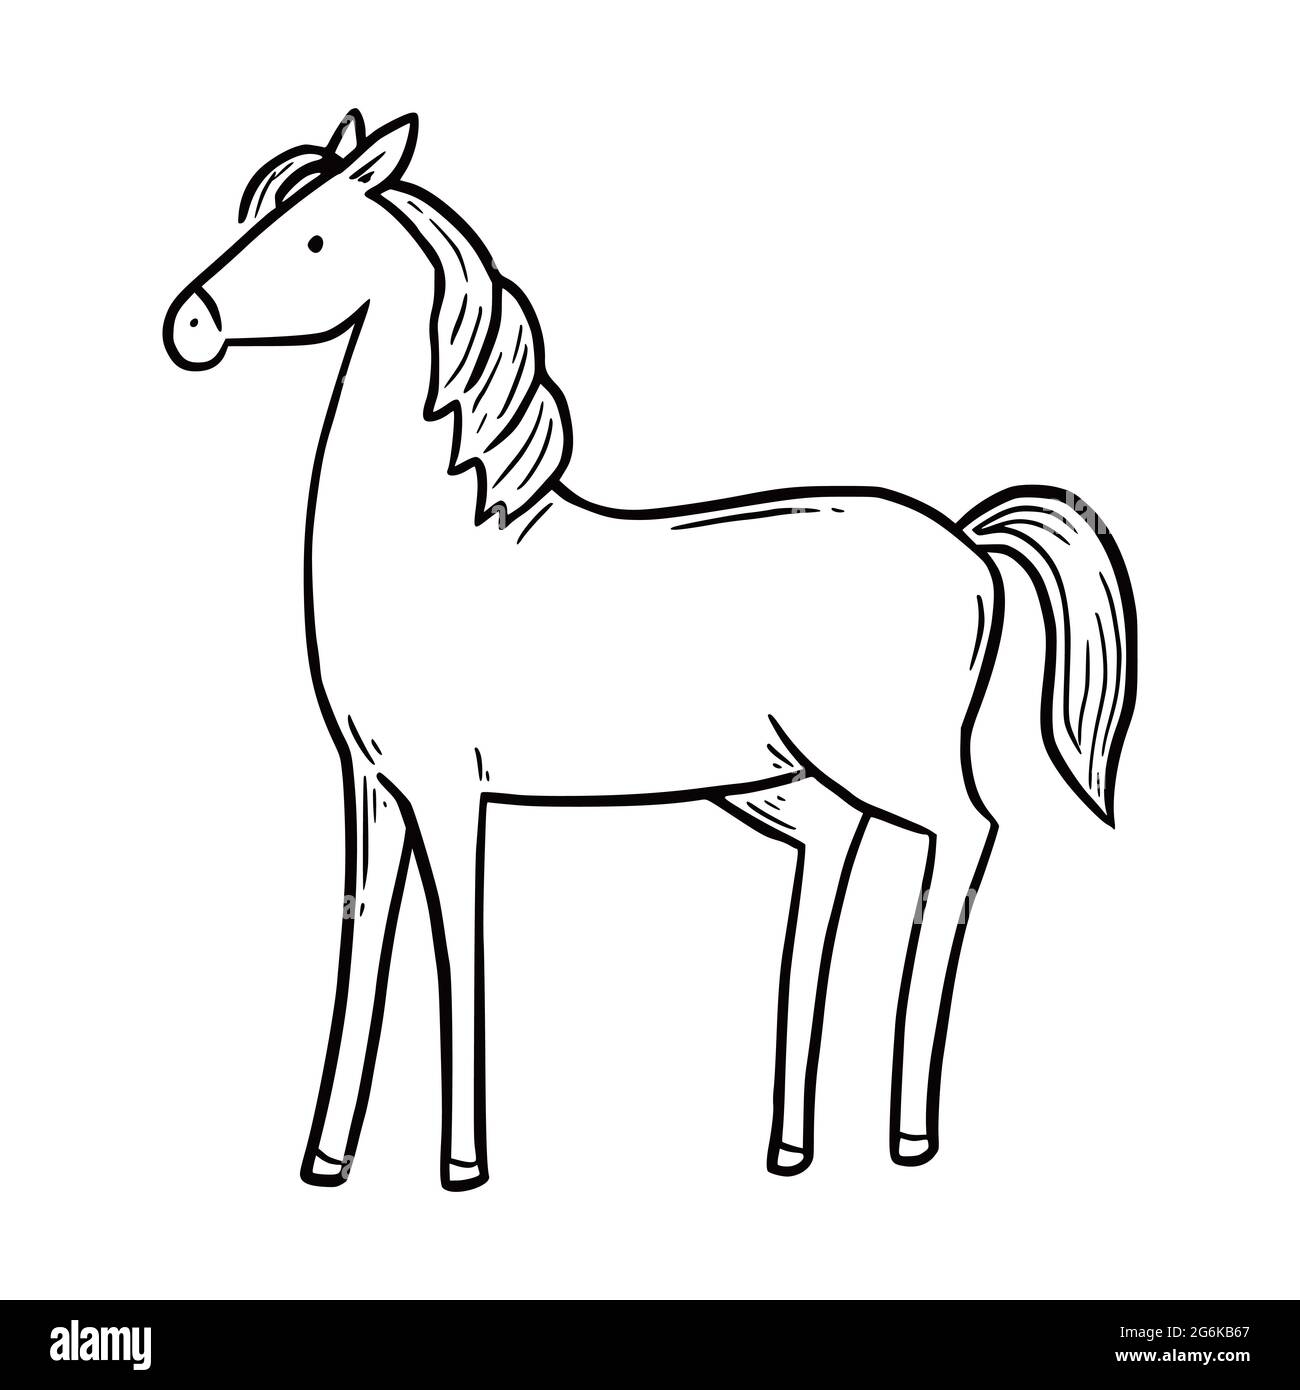 Cavallo di fattoria tirato a mano. Stile di schizzo Doodle. Icona a cavallo della linea di disegno. Illustrazione vettoriale isolata. Illustrazione Vettoriale